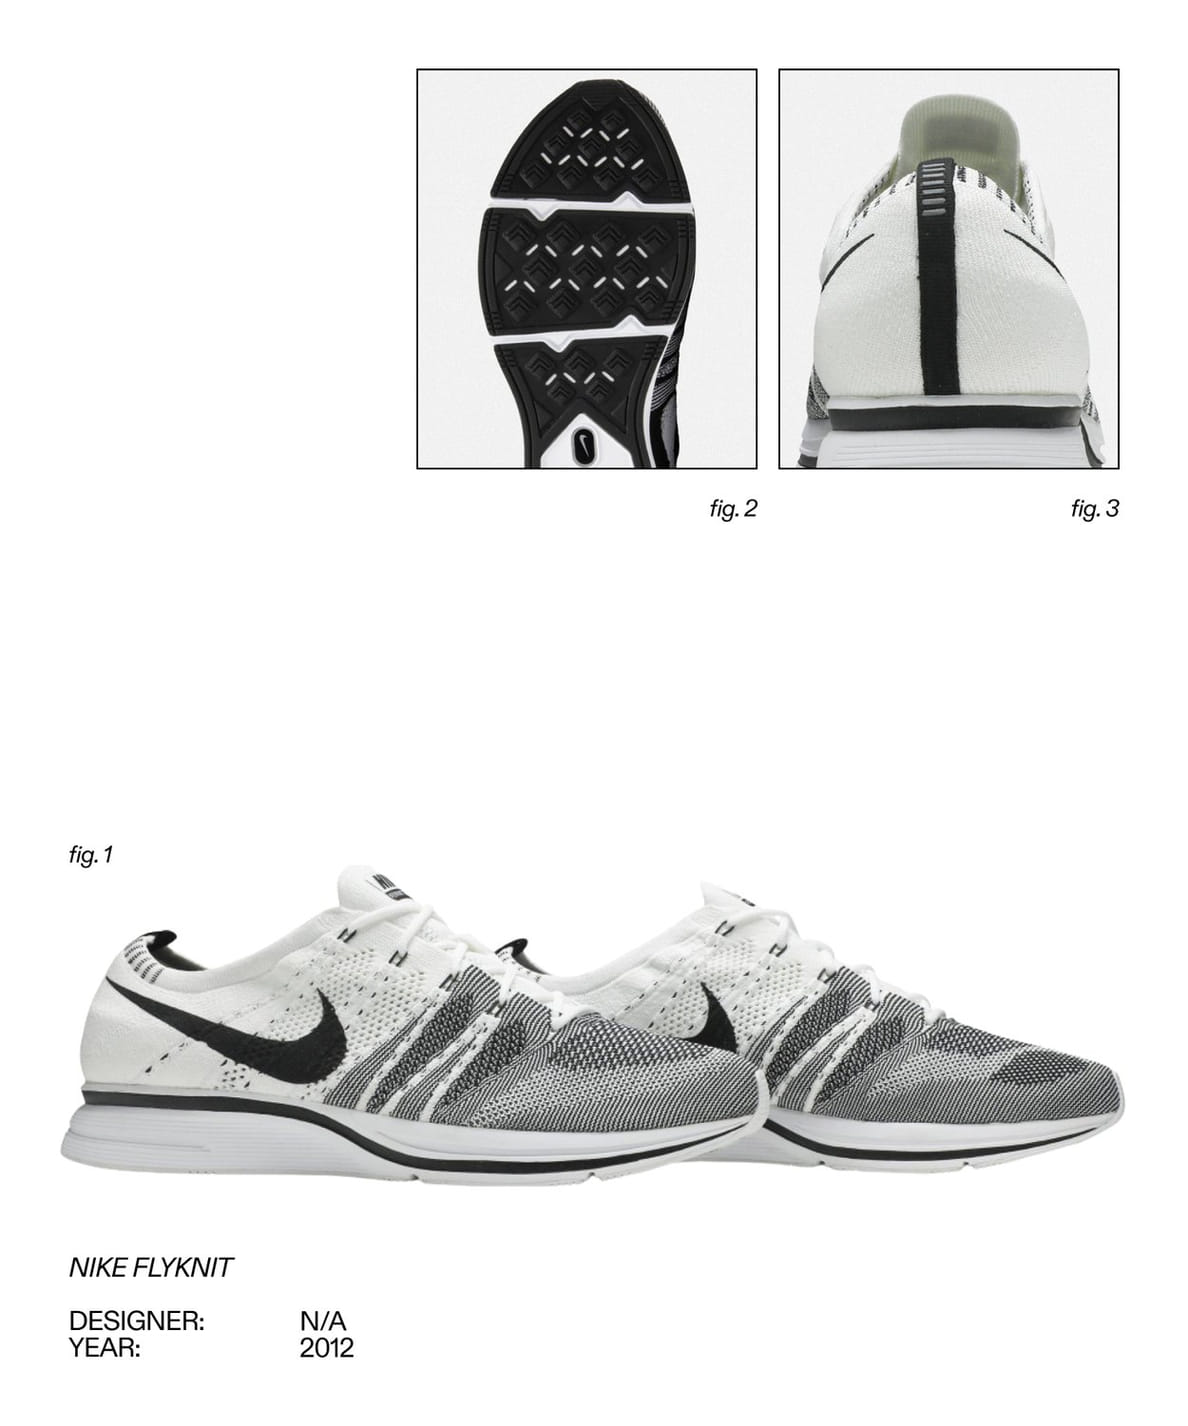 Ot Nike AIR do adidas Boost 11 samyh innovatsionnyh tehnologij v krossovkah za vse vremya 6